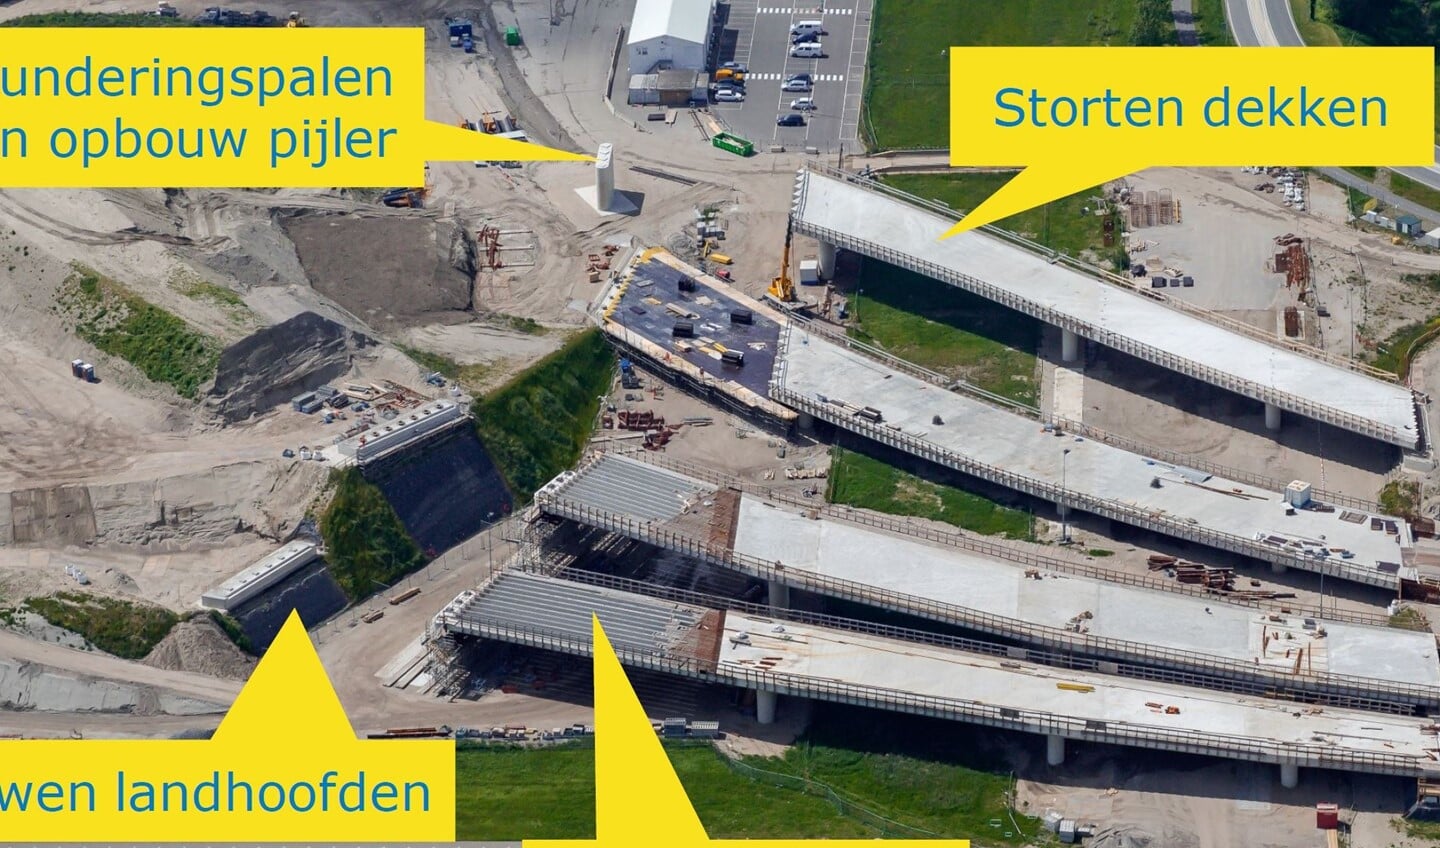 Vier viaducten beschermen de kabels en leidingen. Foto: Rijkswaterstaat.